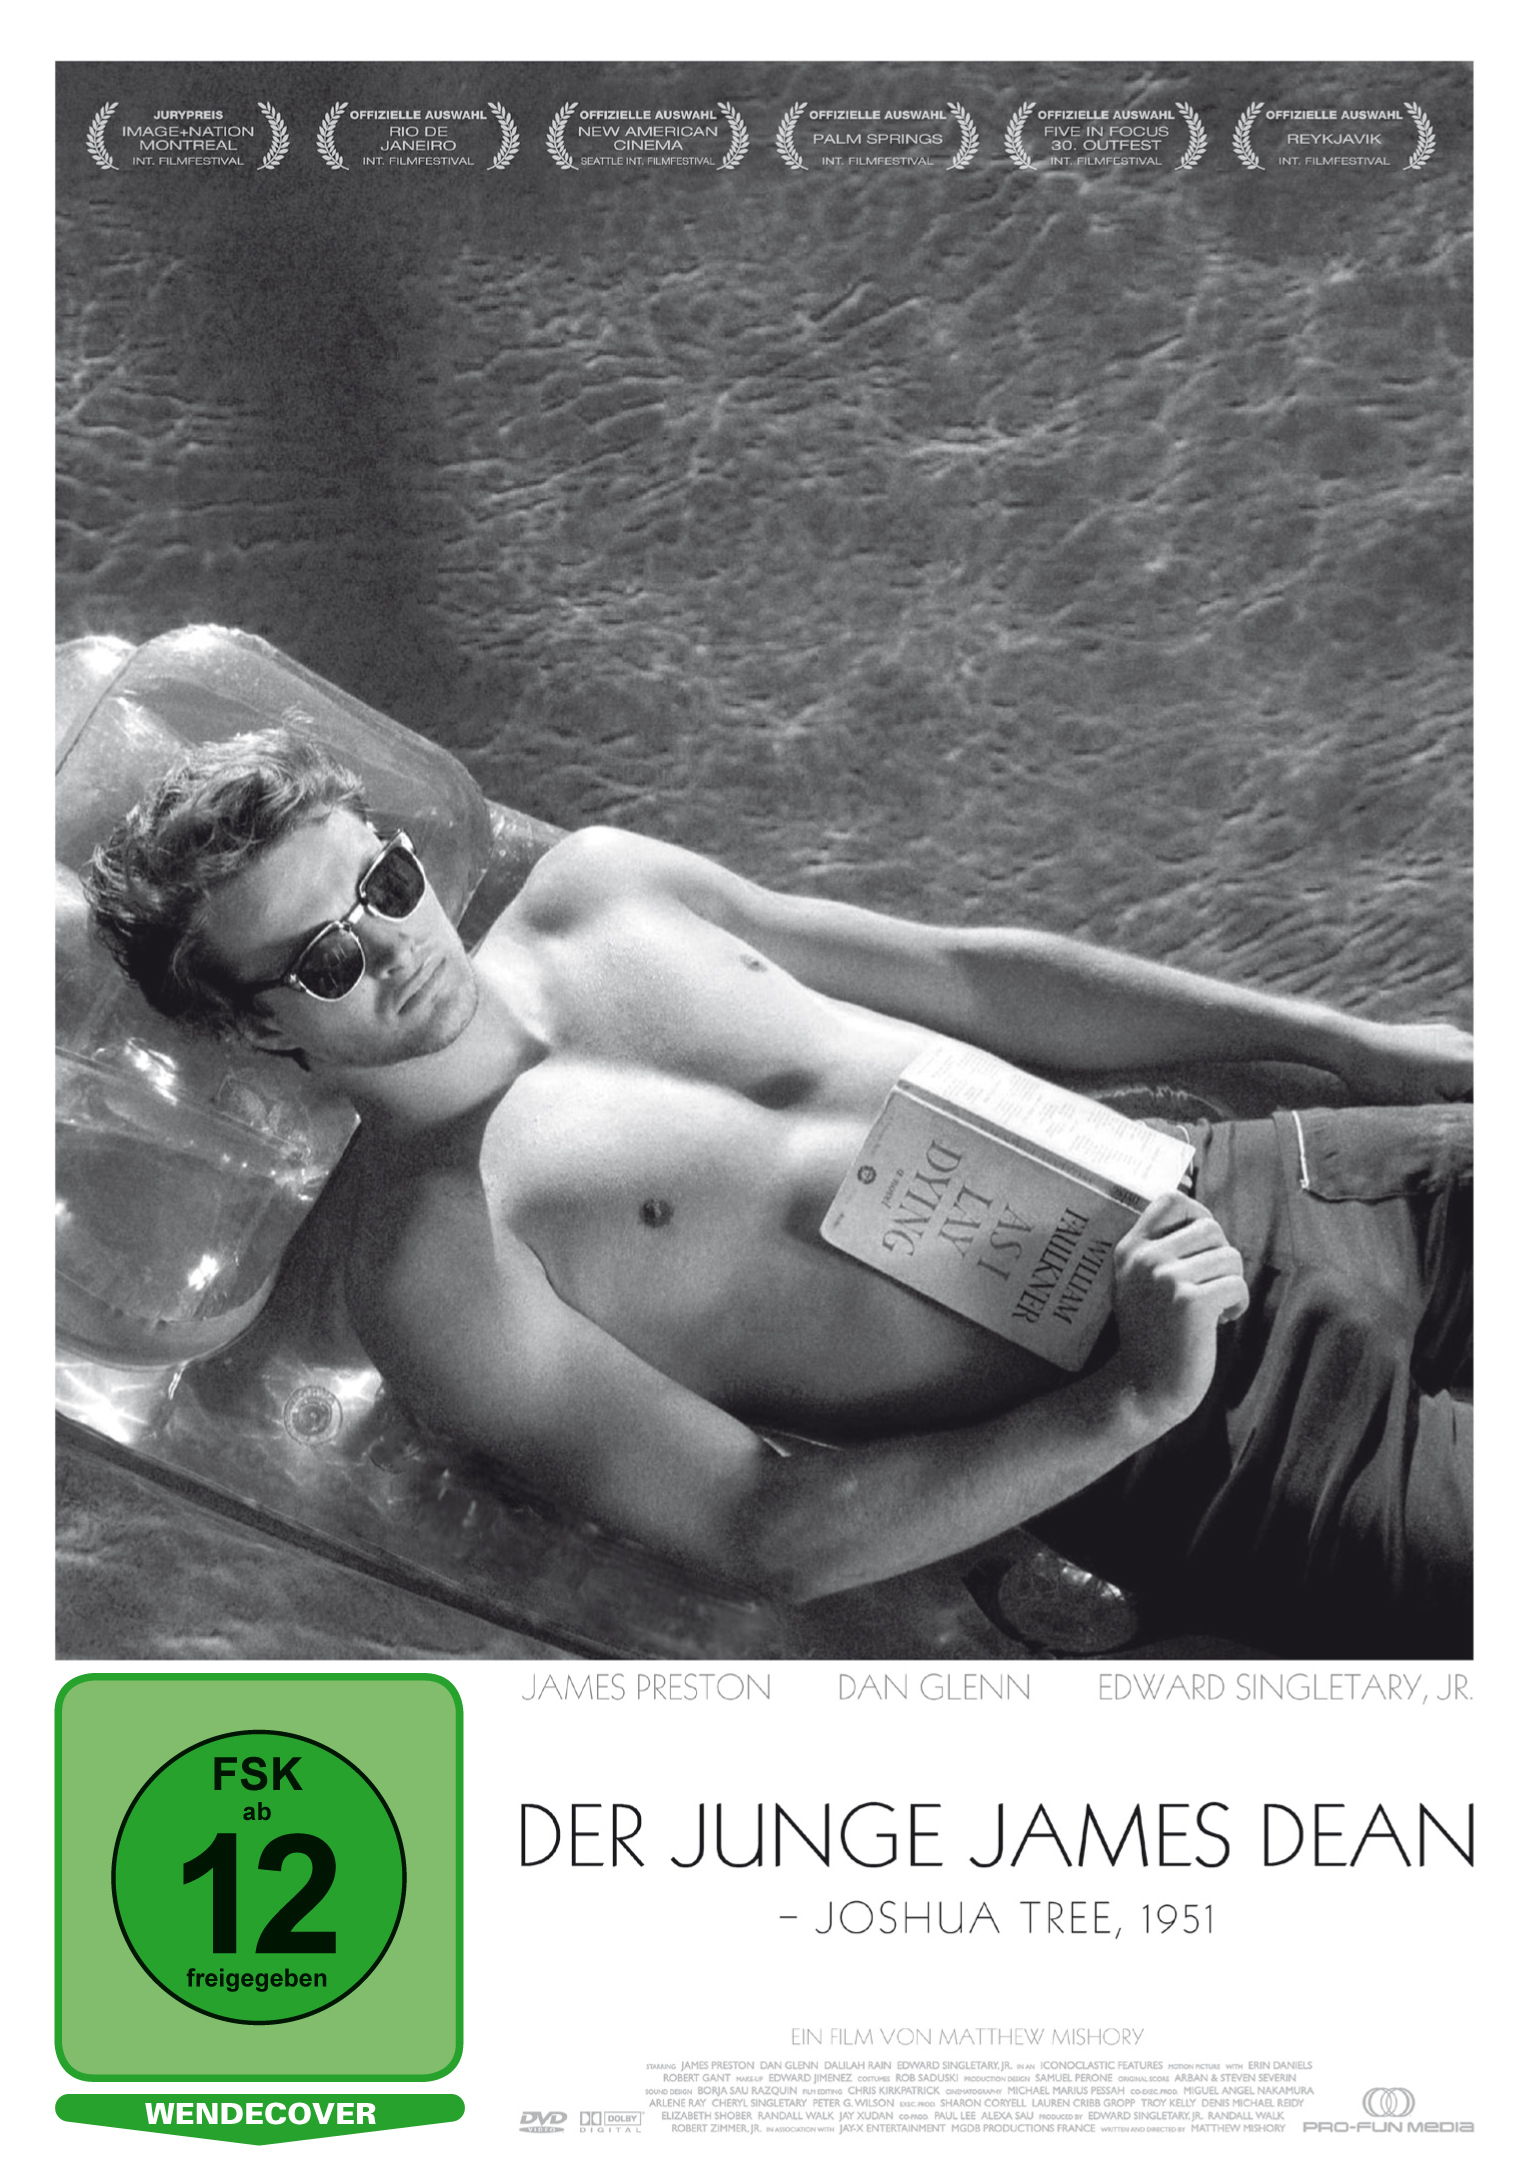 Der junge James Dean - Joshua Tree, 1951